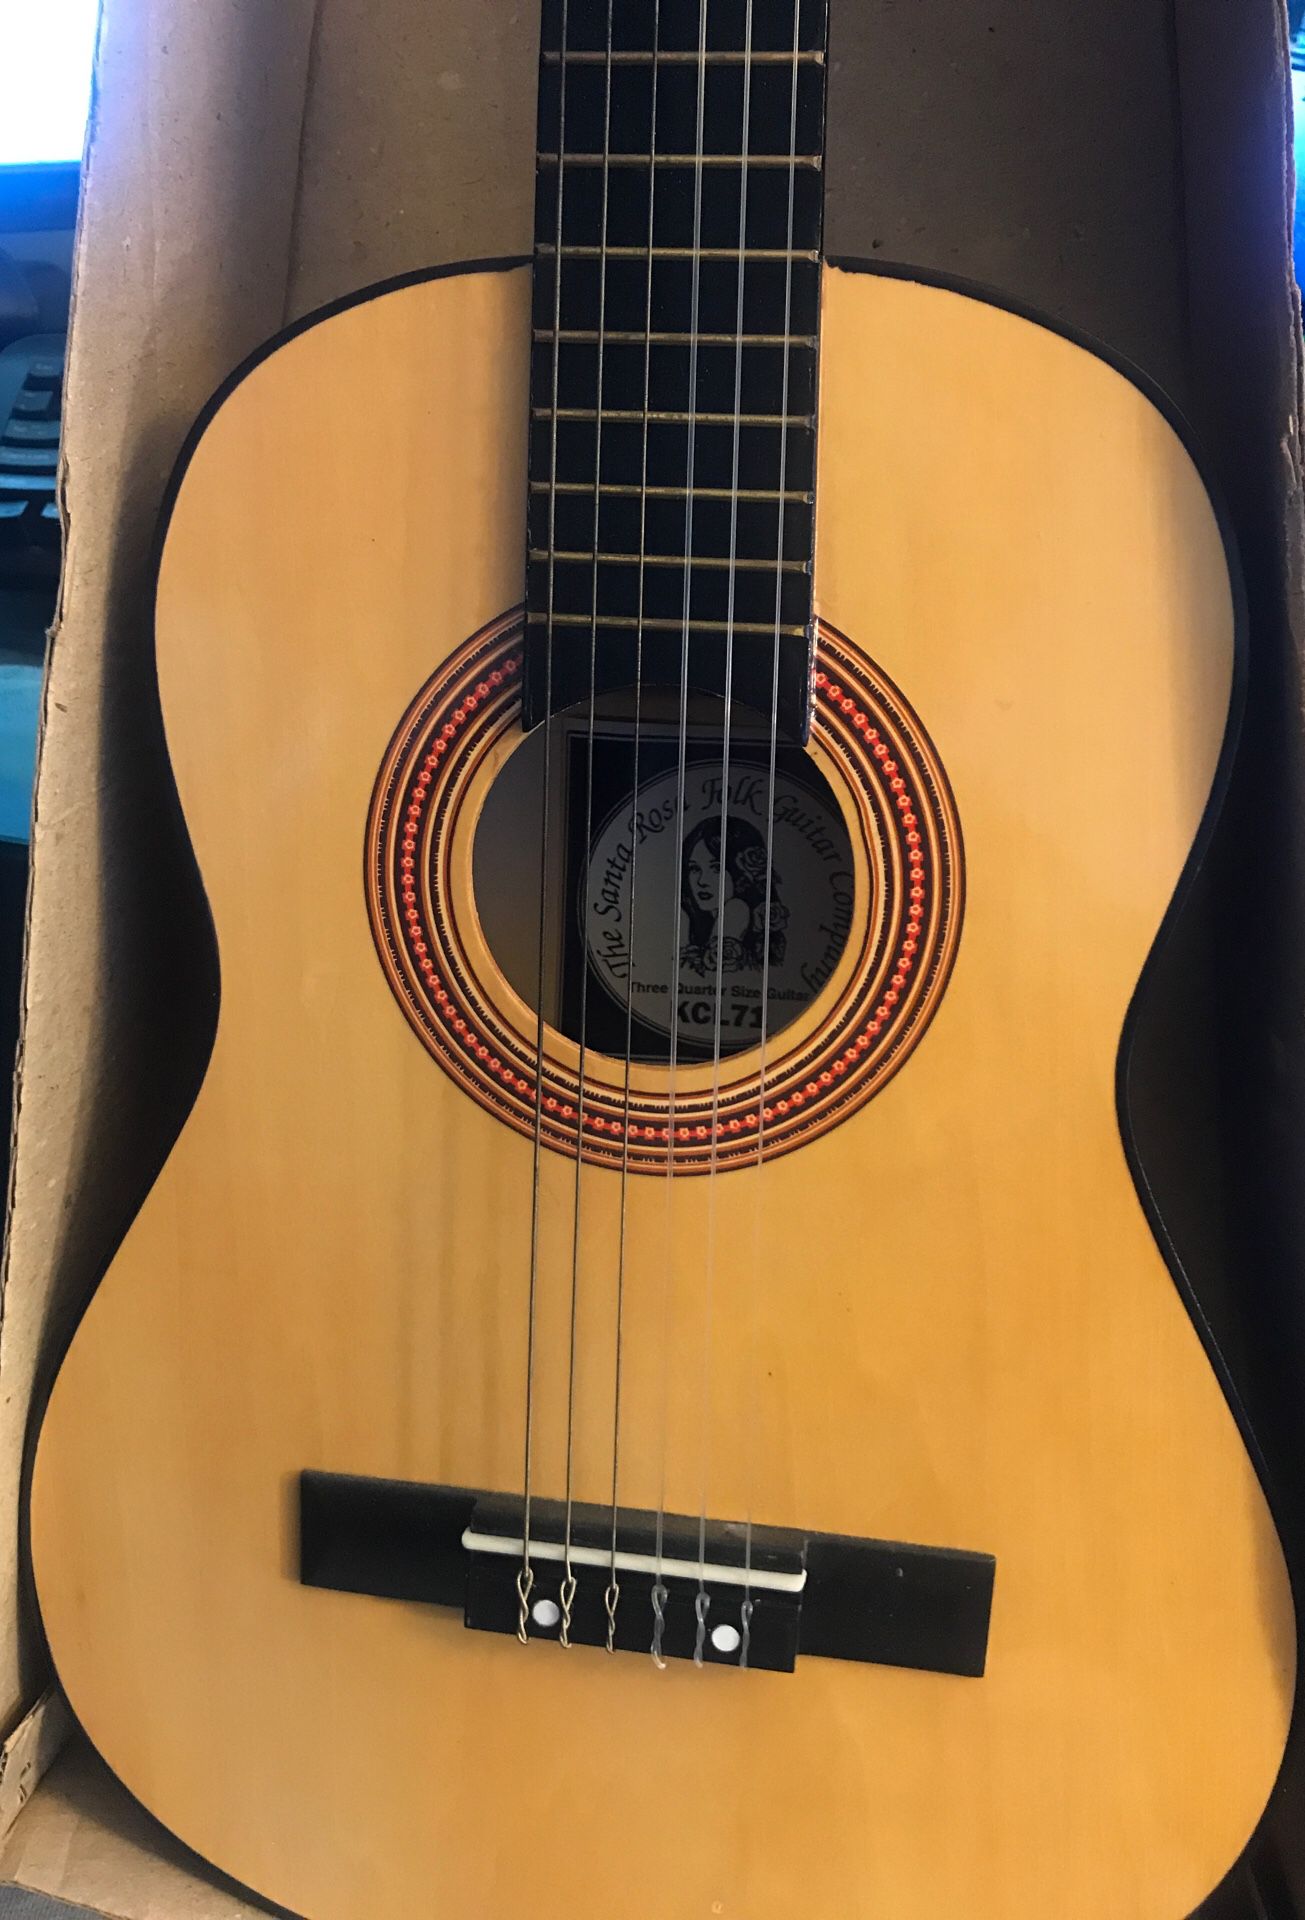 Santa Rosa guitar